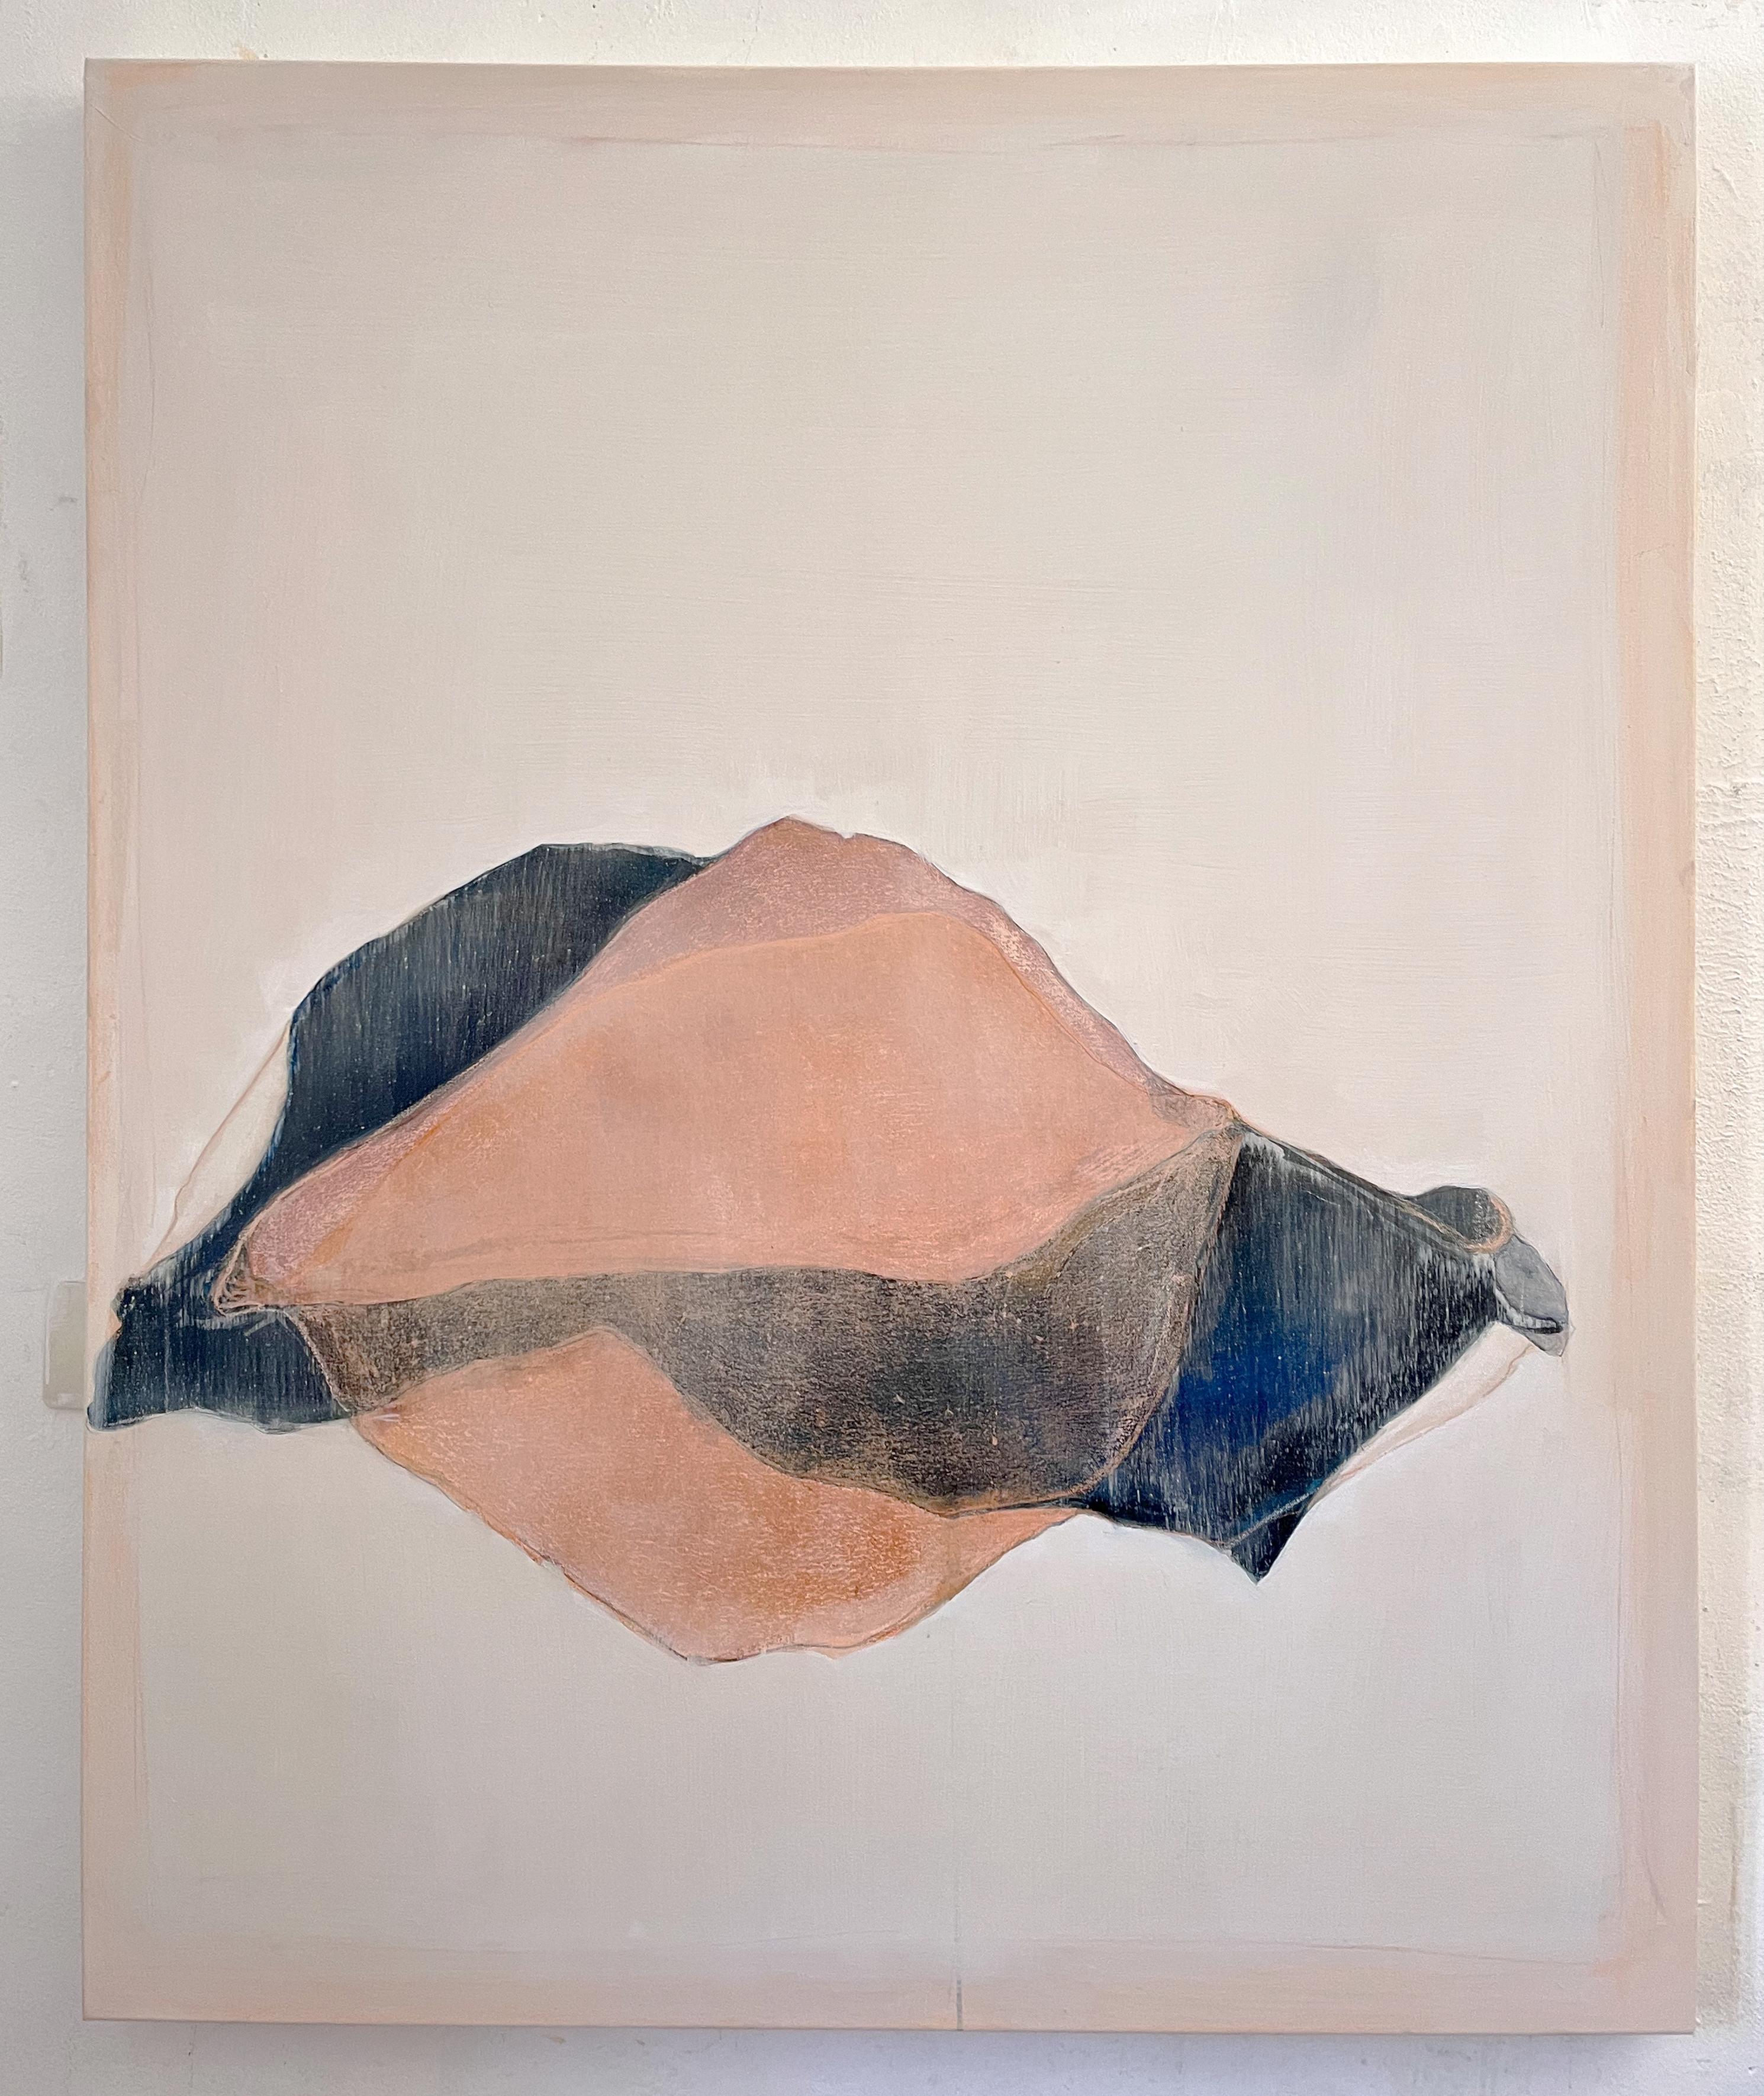 Abstract Painting Marilina Marchica - Peinture abstraite sur toile « Paysage géométrique », Art contemporain fabriqué en Italie